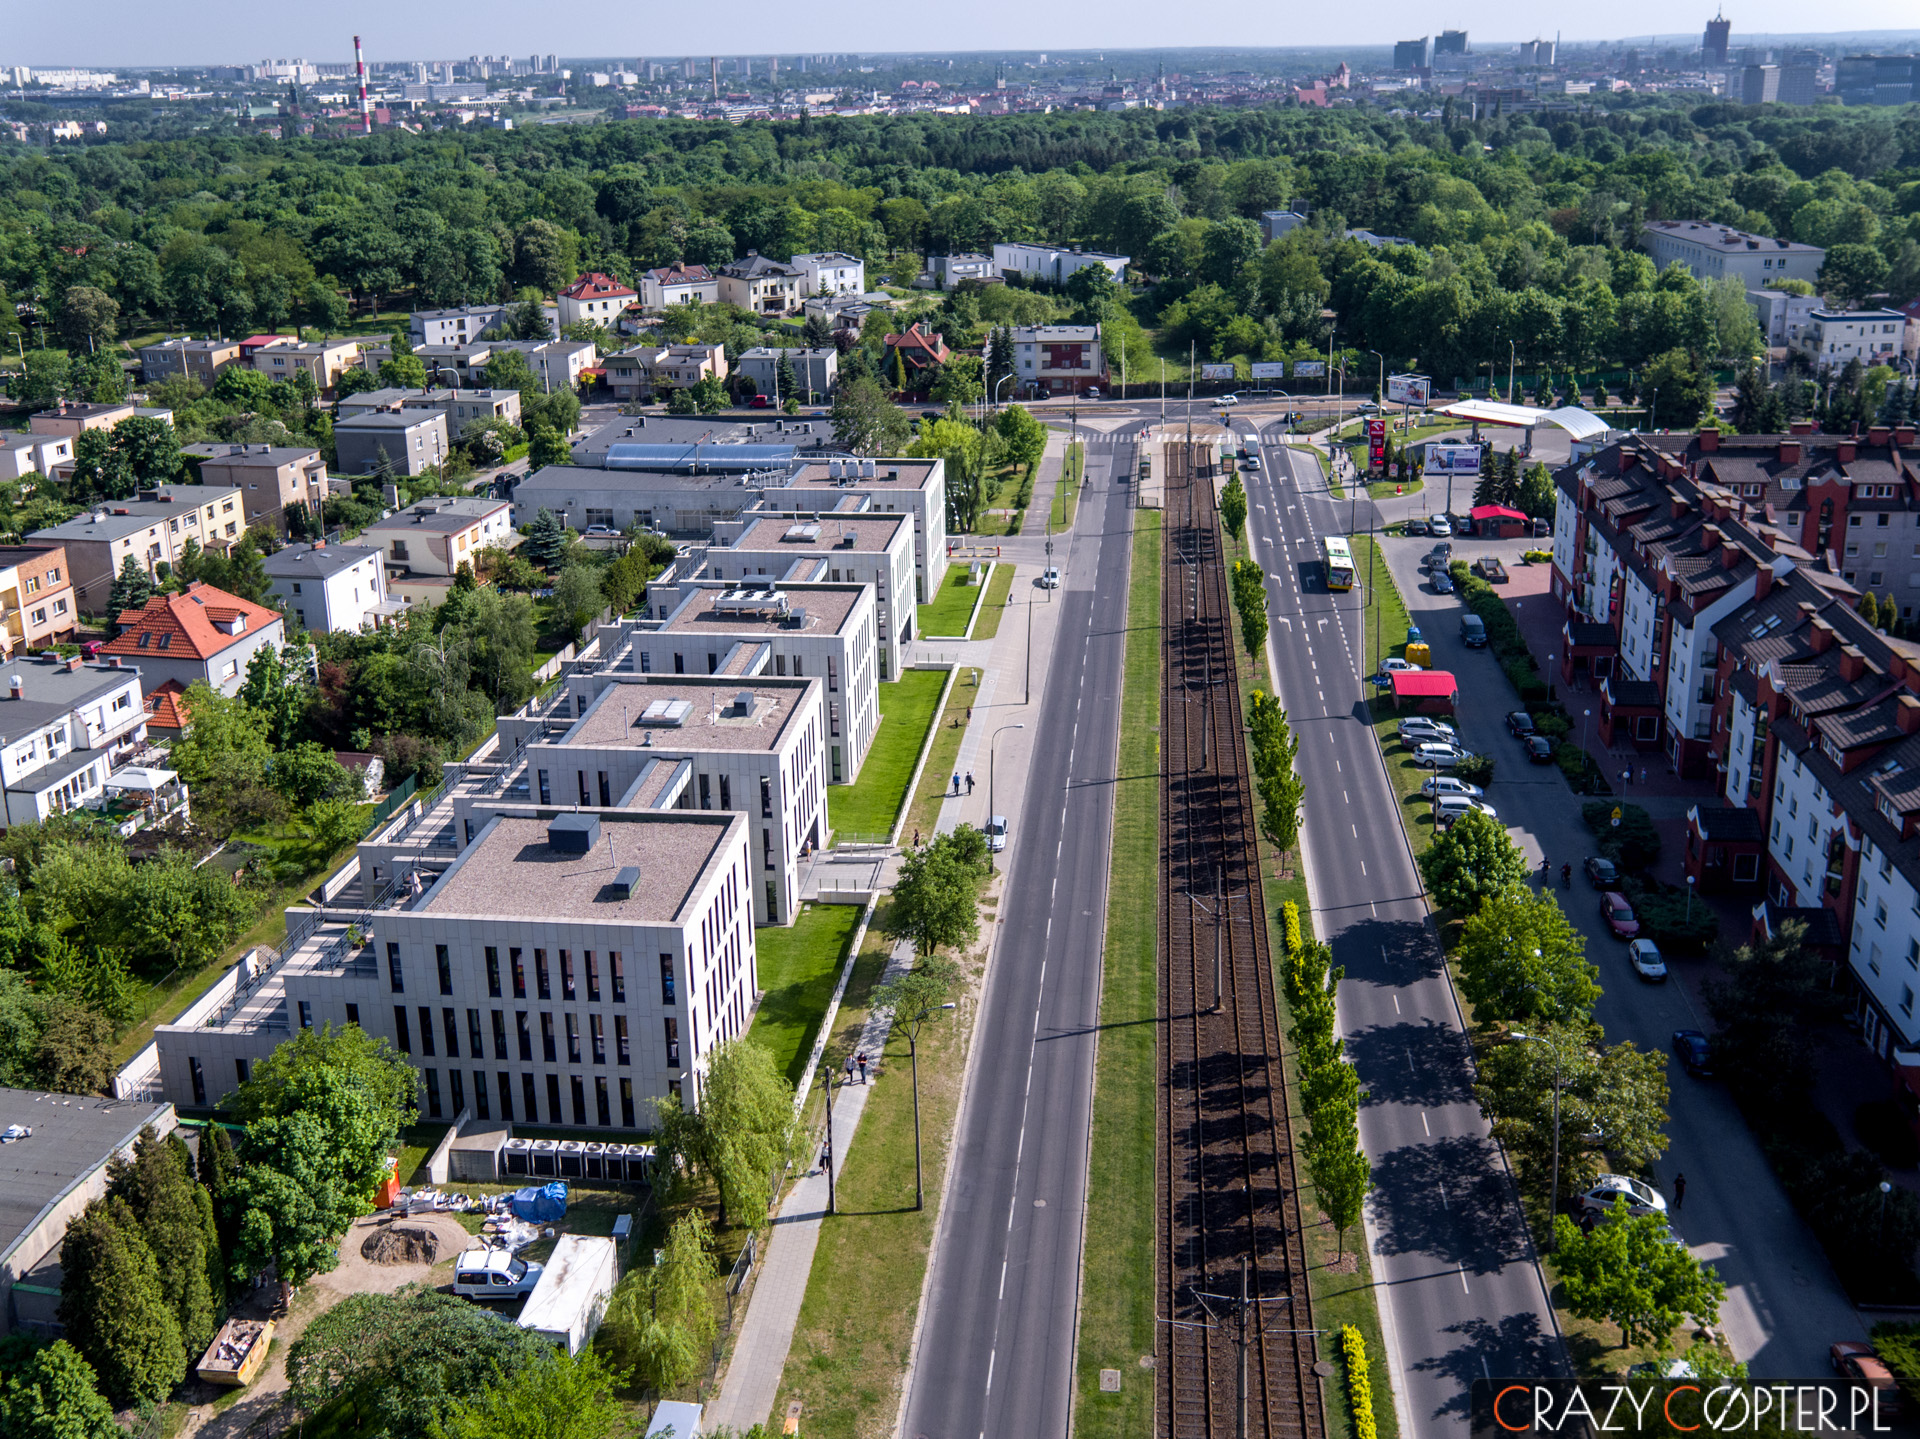 Zdjęcia nieruchomości z drona pokazują nie tylko budynek, ale i atrakcyjne otoczenie. Tutaj linia tramwajowa wraz z przystankiem autobusowym oraz zielenią w postaci parku miejskiego.